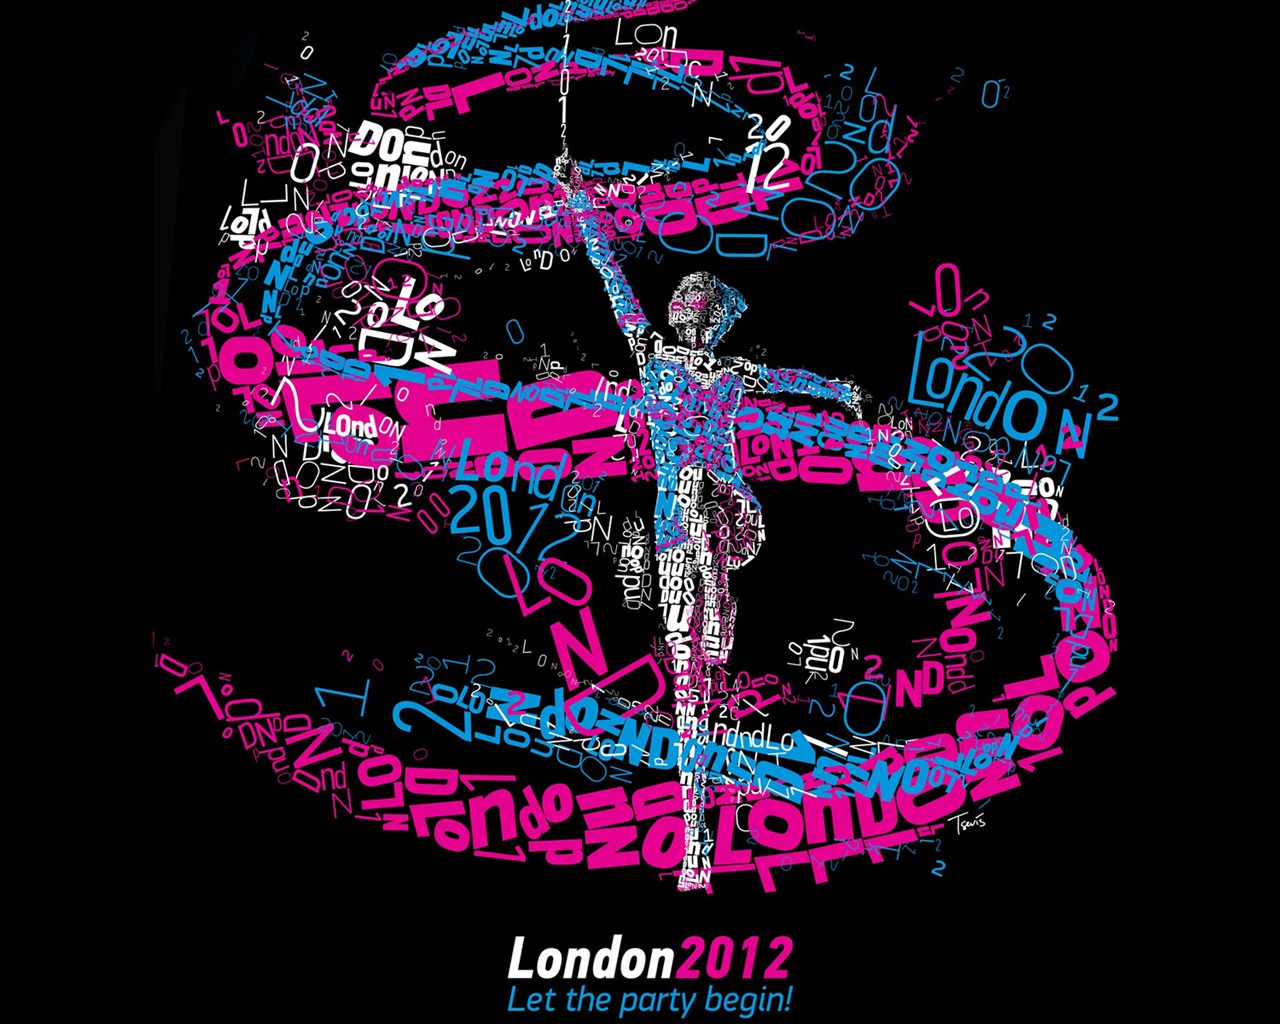 Londres 2012 Olimpiadas fondos temáticos (1) #23 - 1280x1024